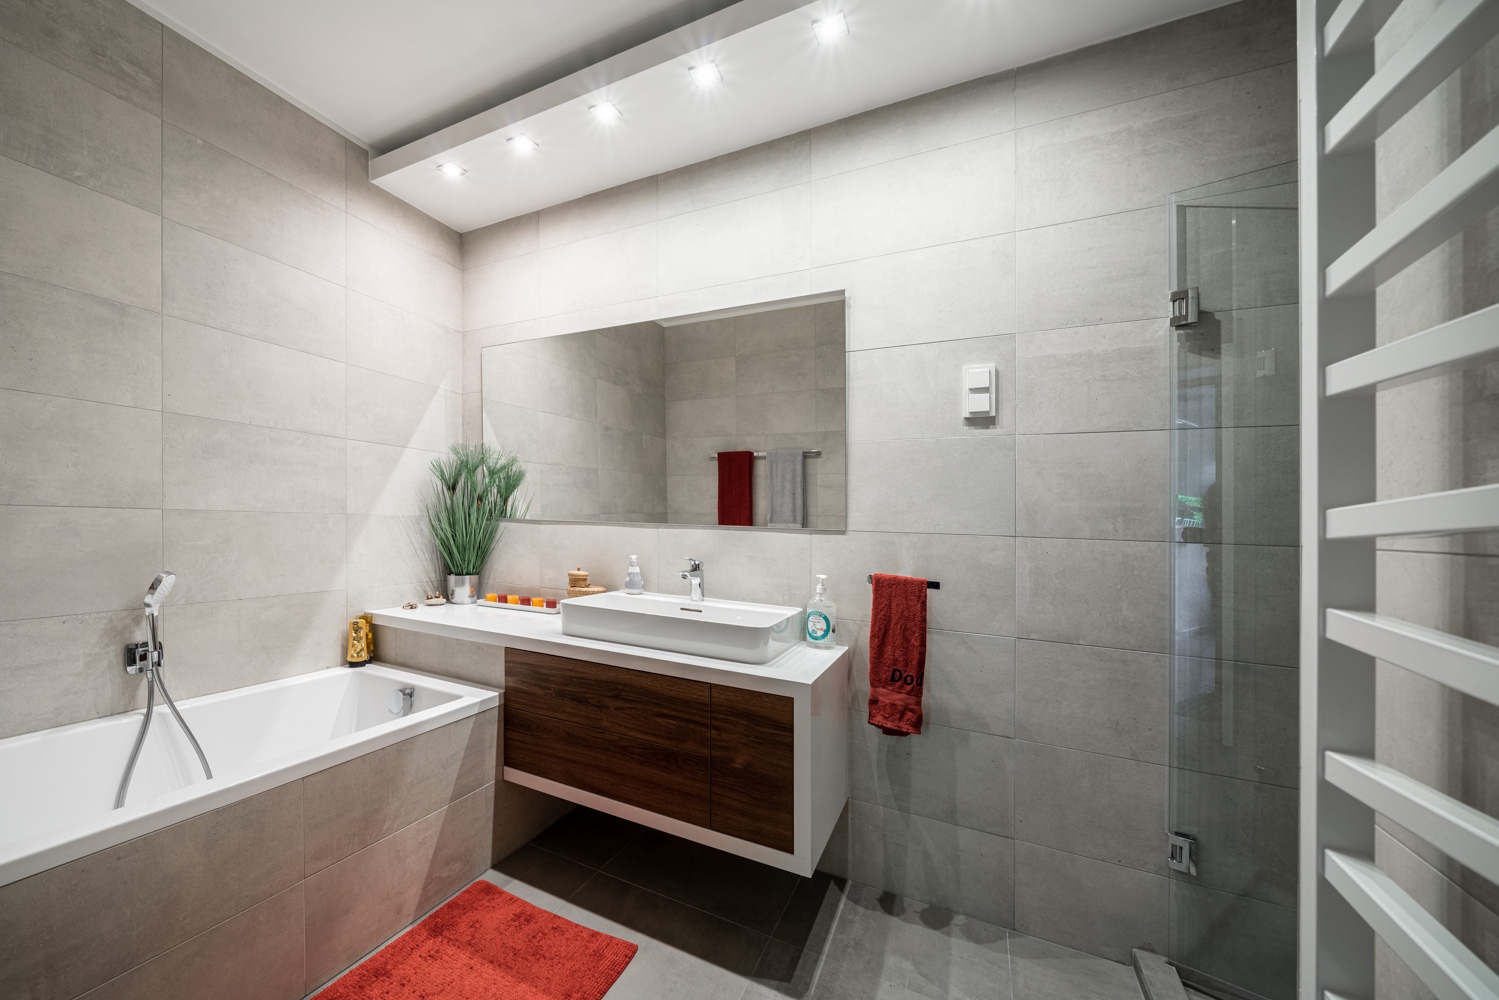 A nagyobb fürdőszoba tökéletes komfortot kínál: kényelmes méretű káddal, könnyed mosdópulttal, fölötte hatalmas tükörrel, mindemellett még egy zuhanyfülke is elfért a helyisgében.